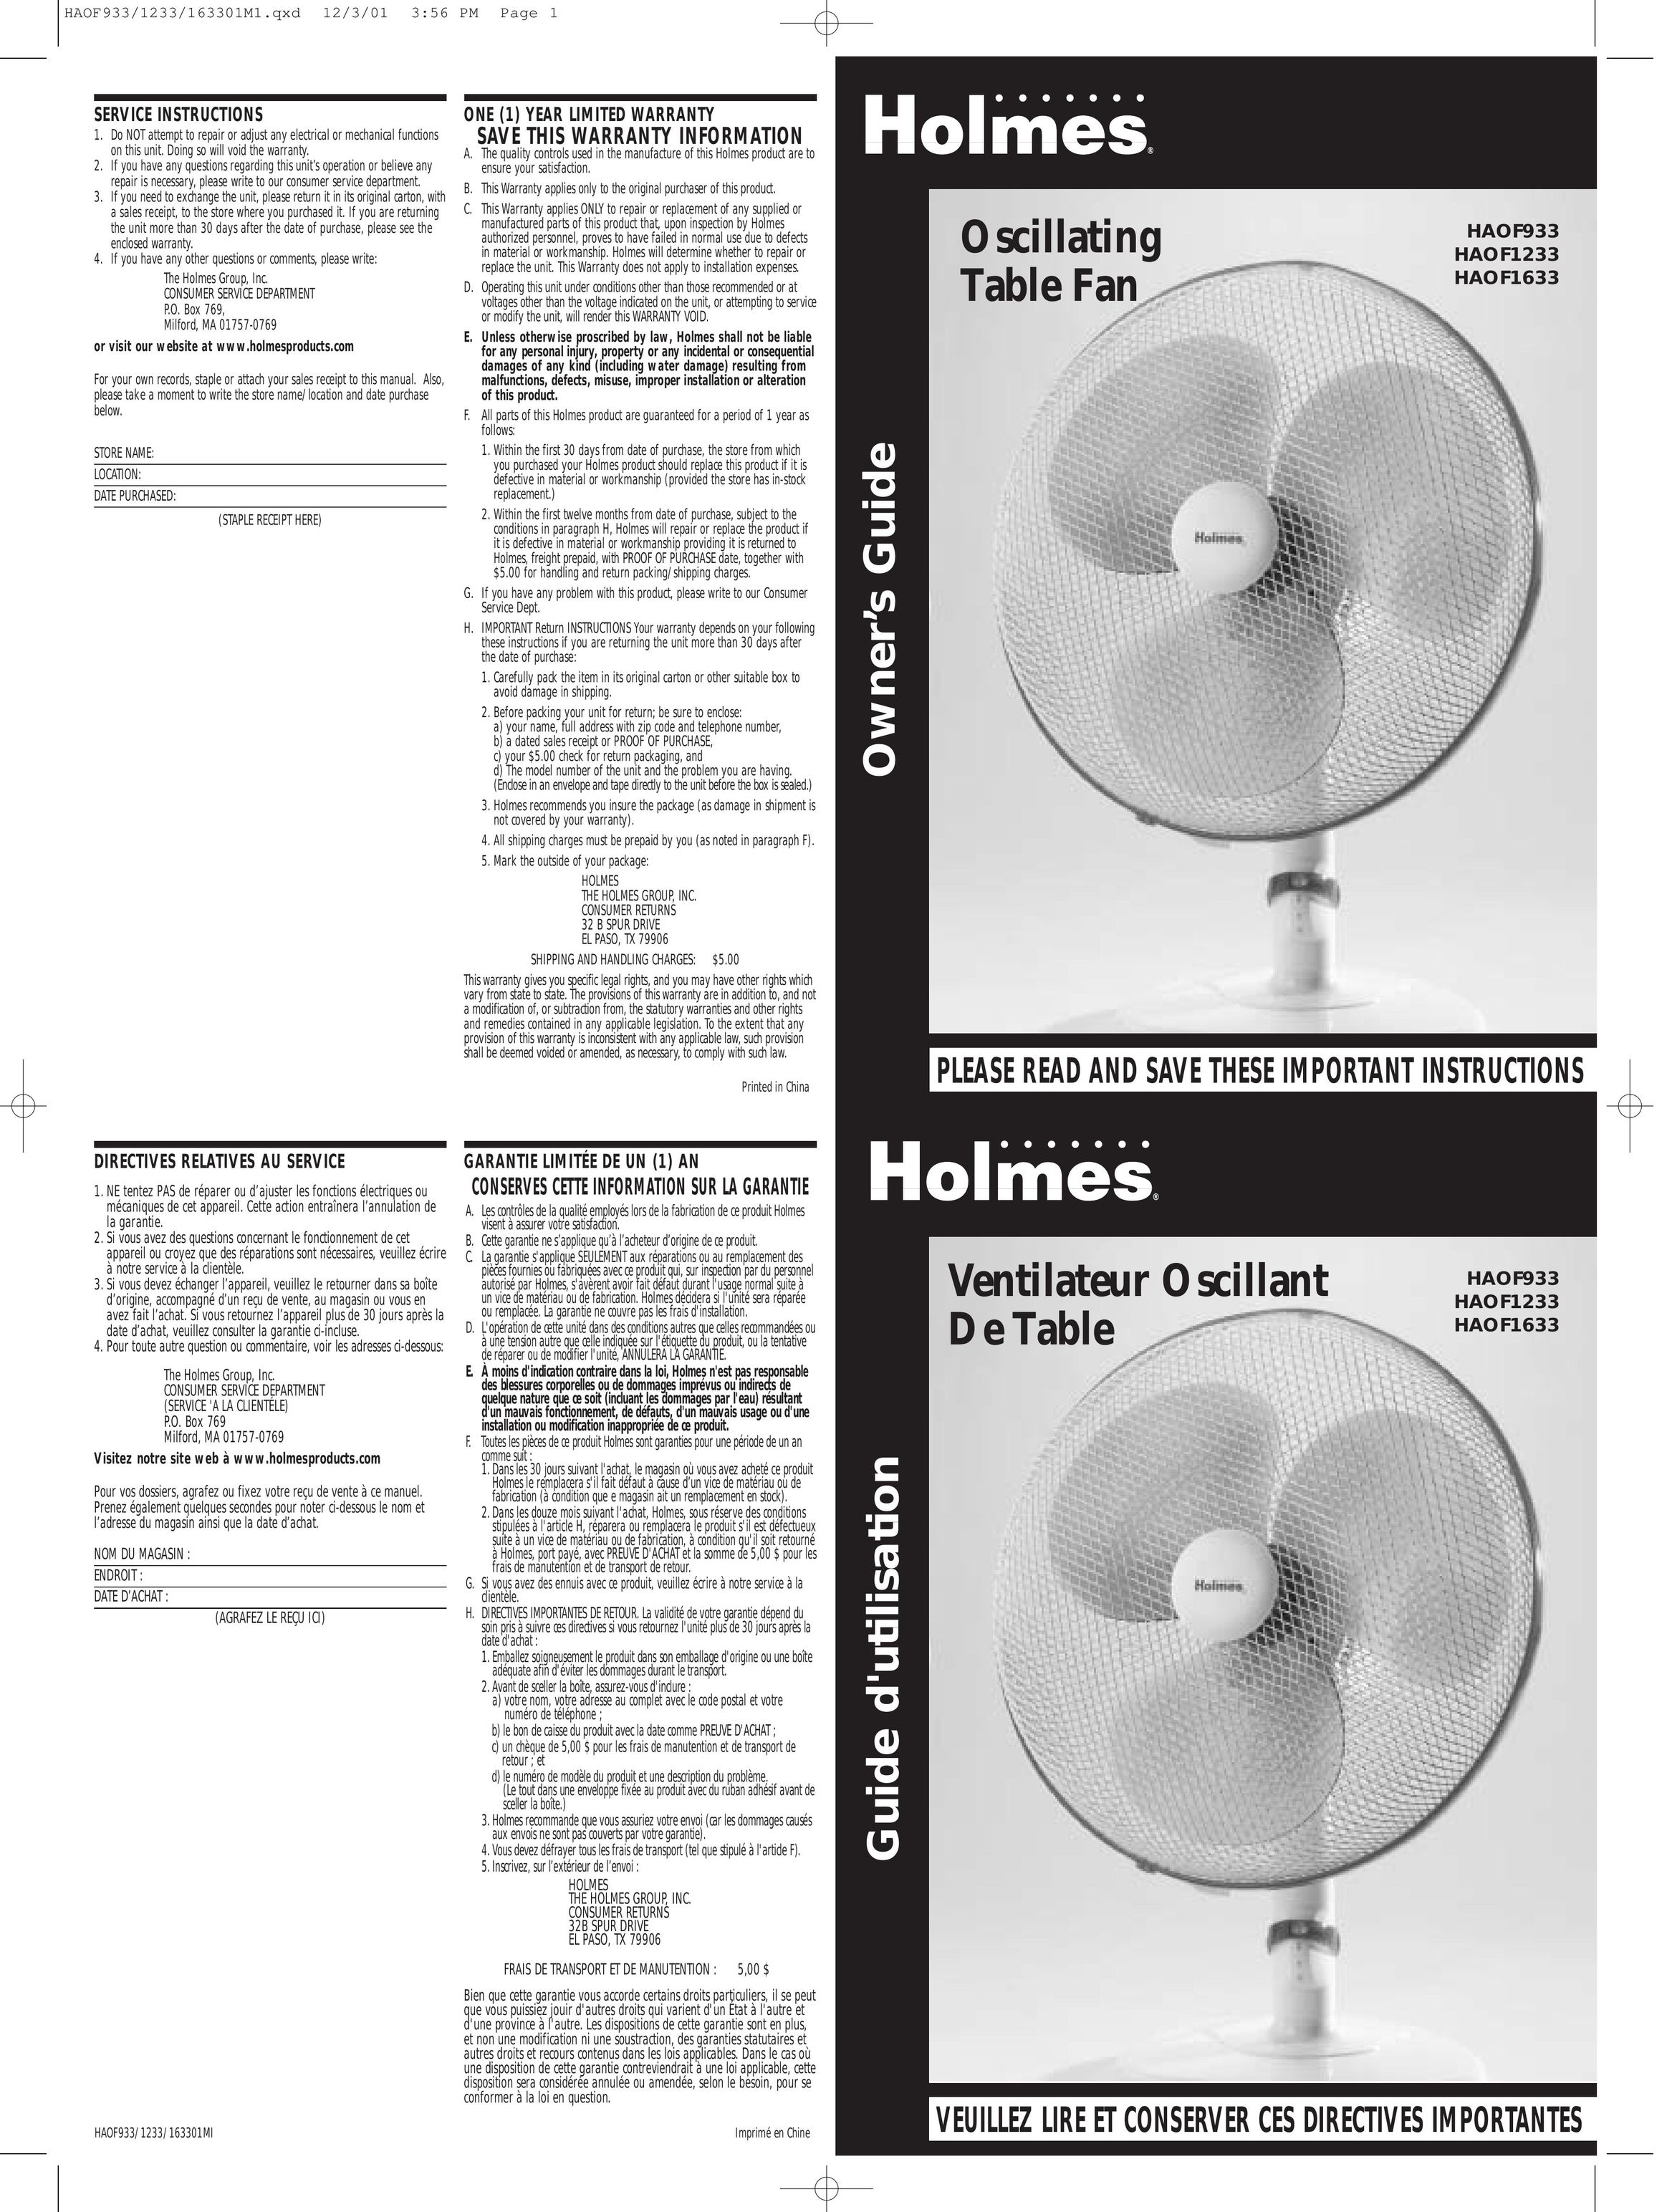 Holmes HAOF933 Fan User Manual